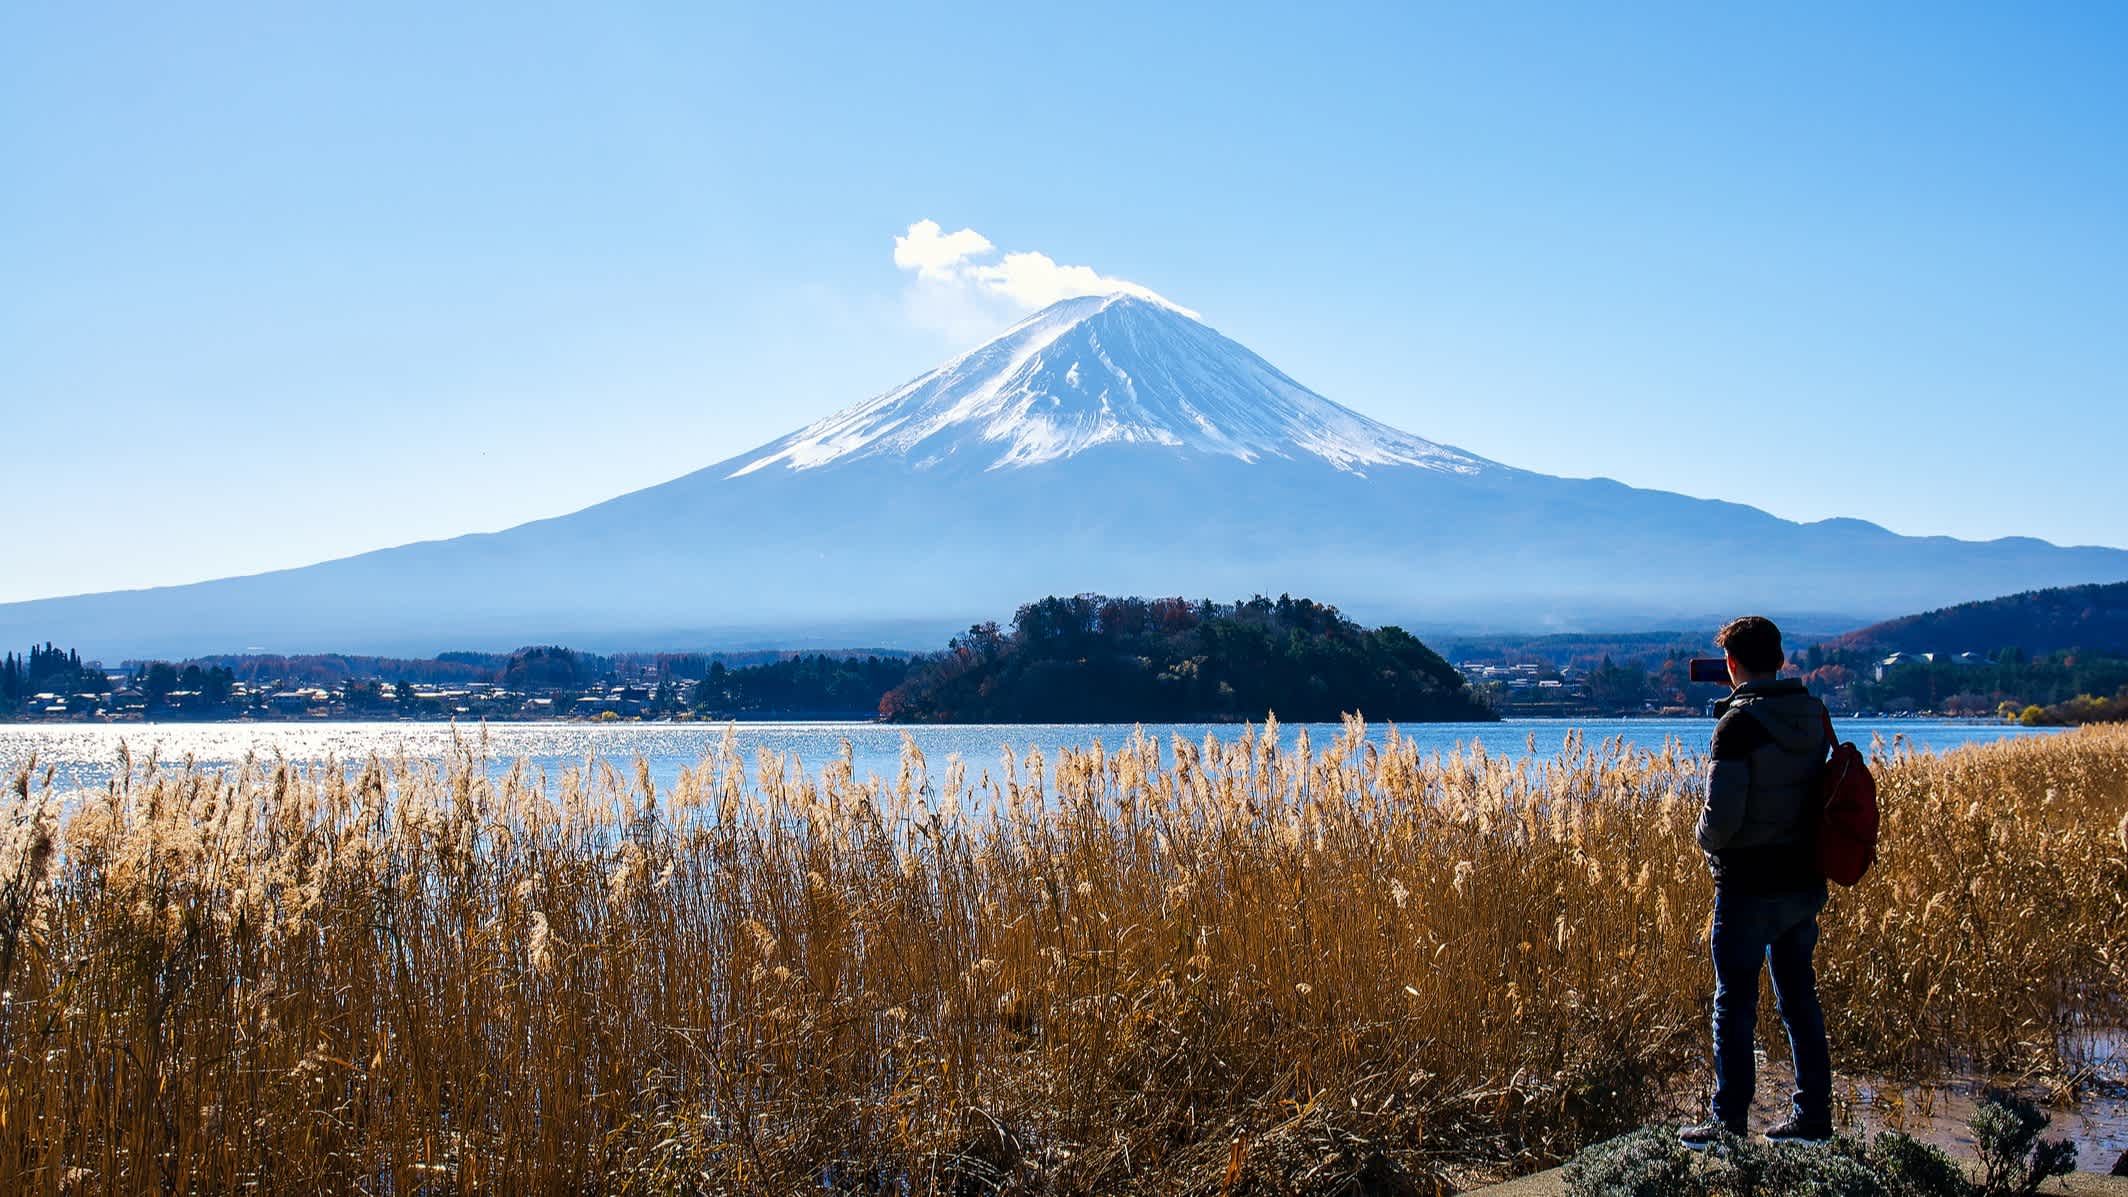 Ein Mann inmitten der wunderschönen Natur des Berges Fuji, Yamanashi, Japan.

